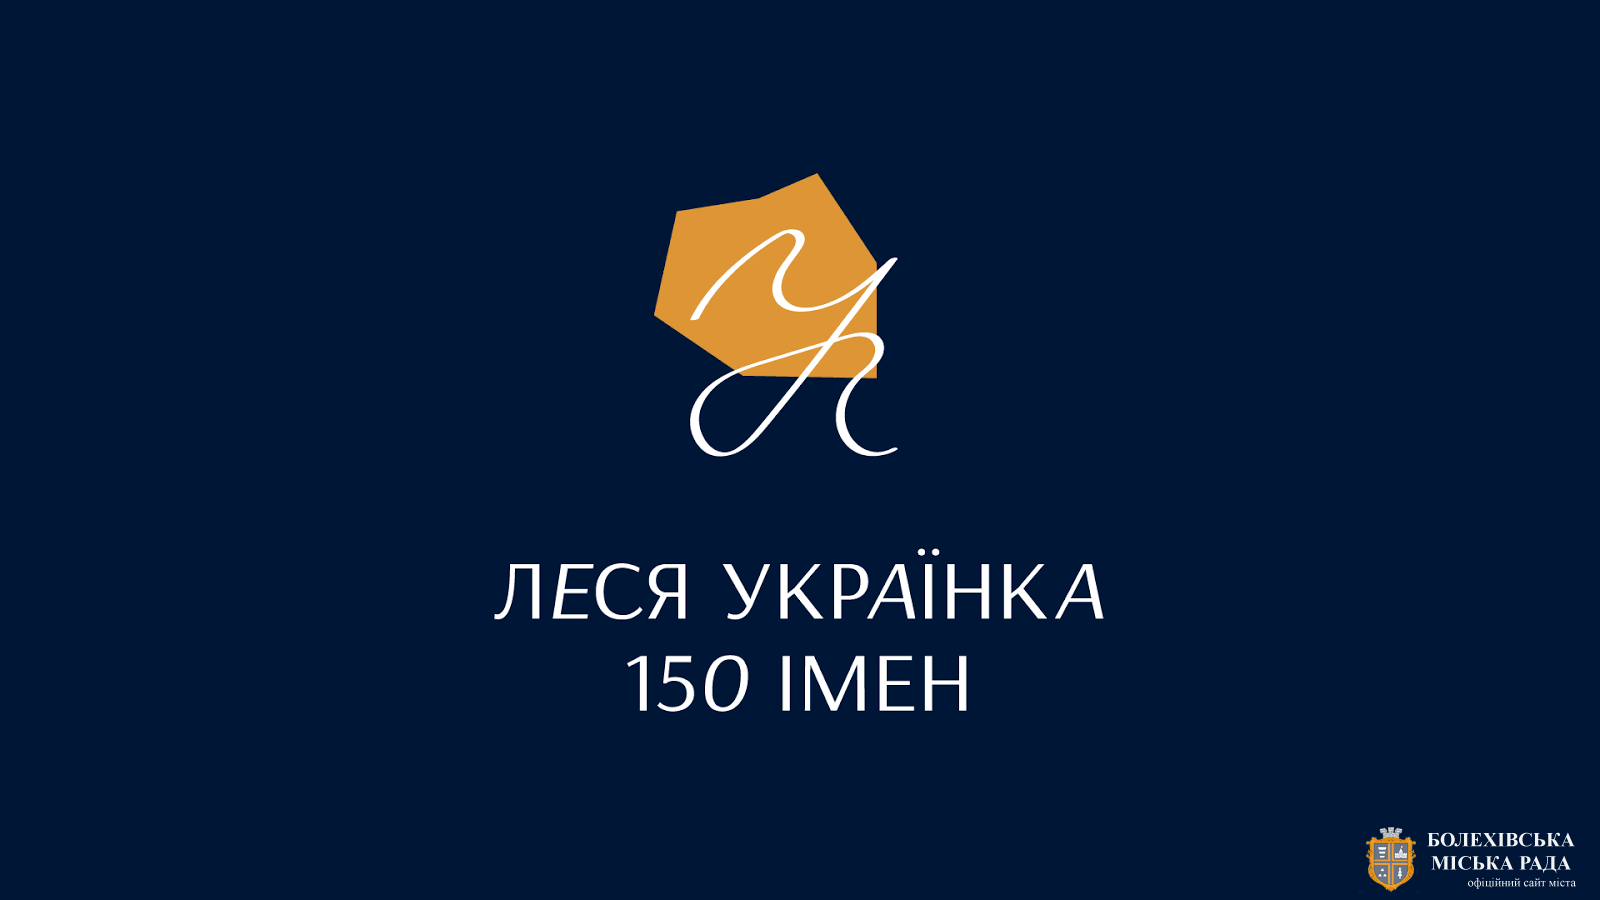 МКІП запустив сайт «Леся Українка: 150 імен» з нагоди 150-річчя від дня народження видатної поетеси